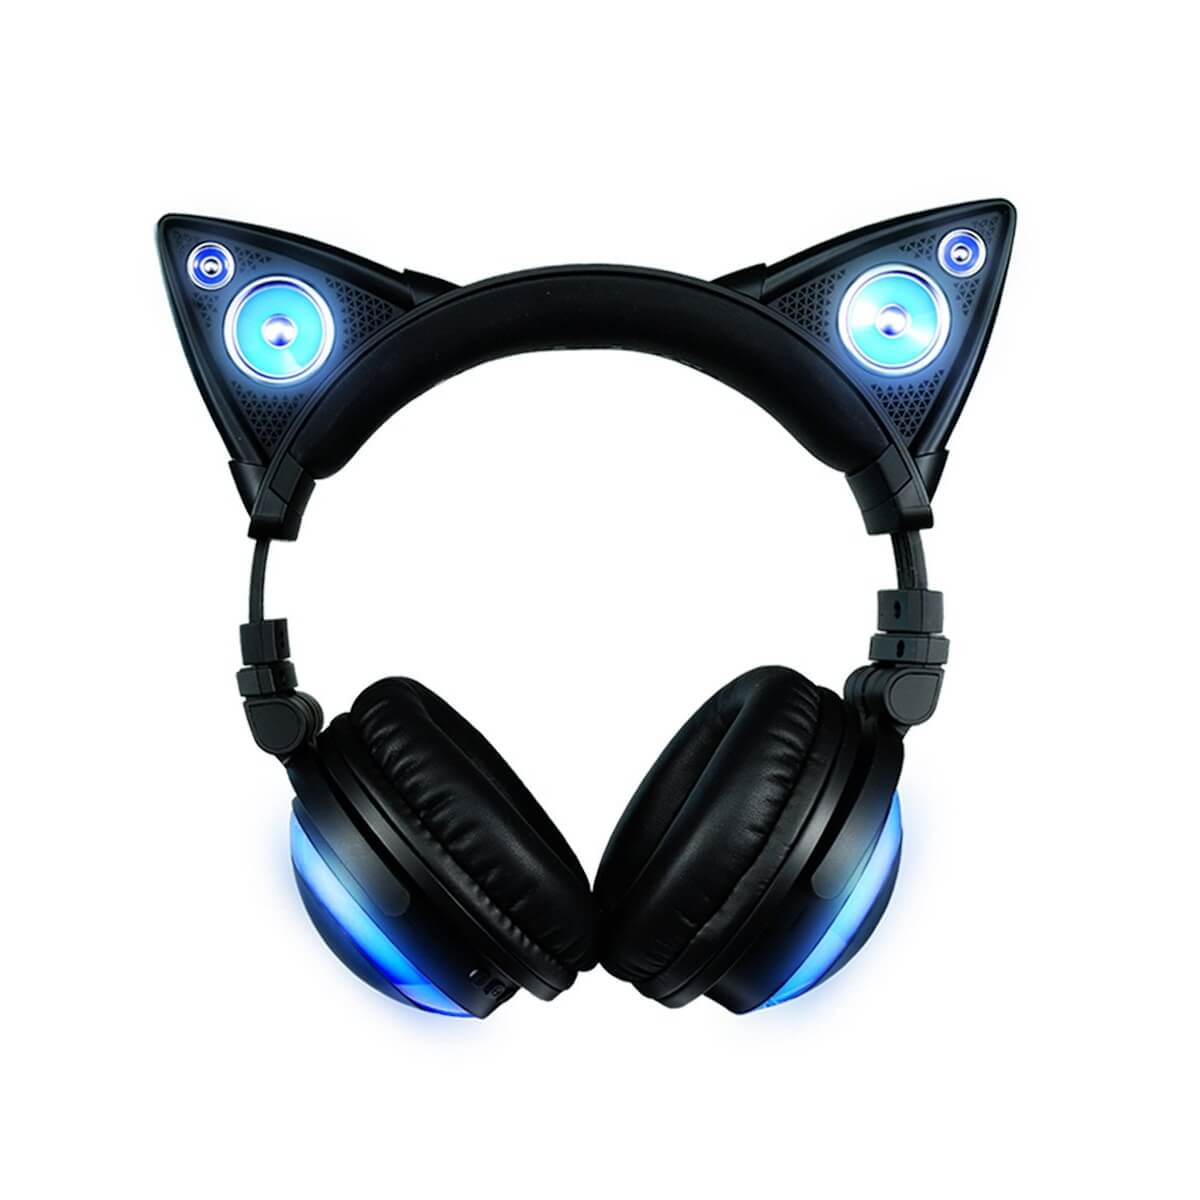 gamer headset cat ears